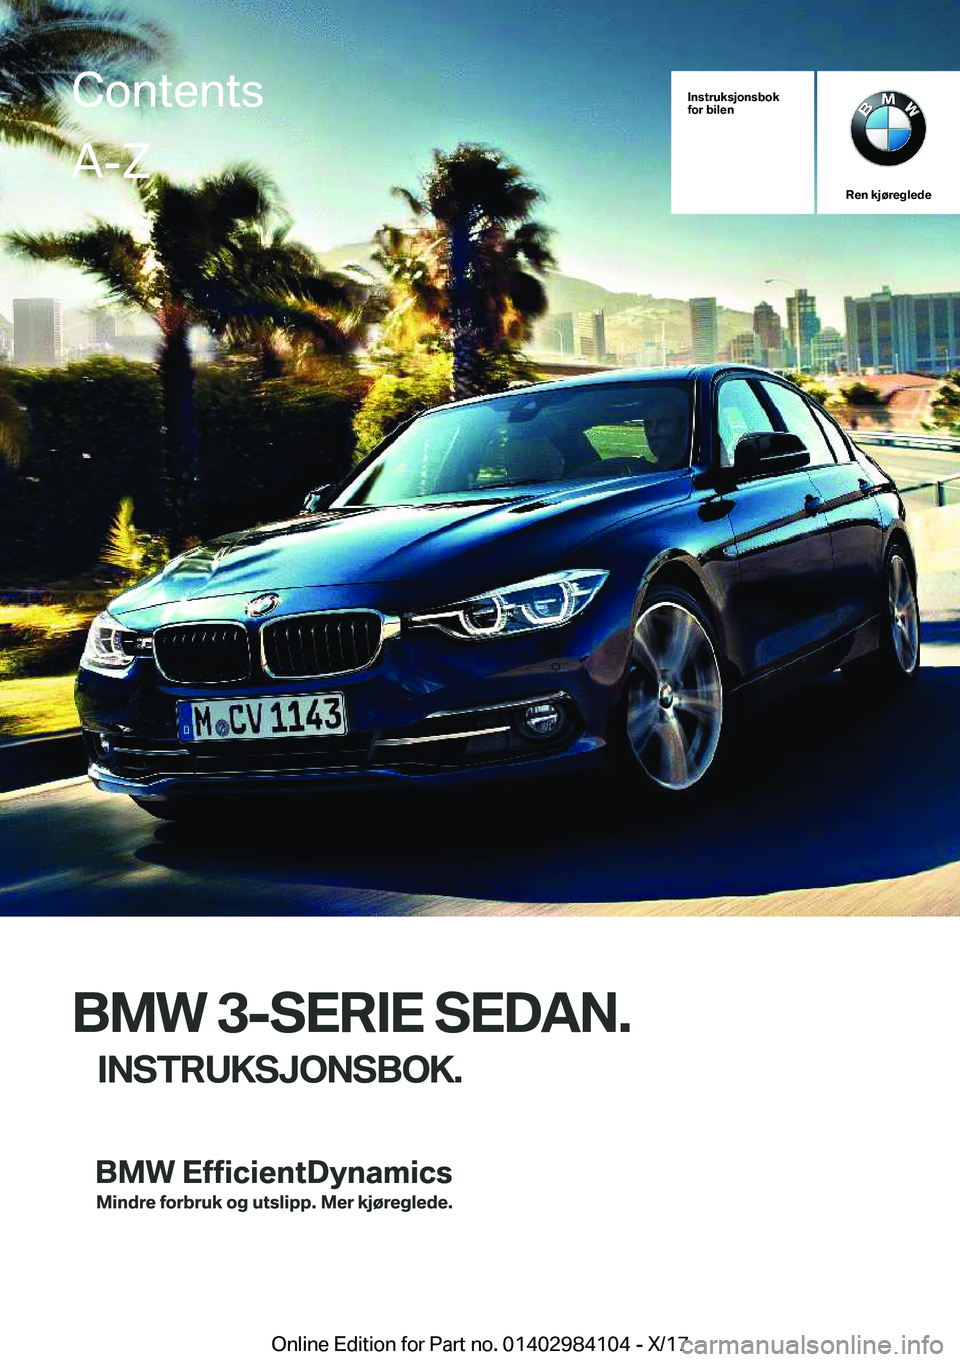 BMW 3 SERIES 2018  InstruksjonsbØker (in Norwegian) �I�n�s�t�r�u�k�s�j�o�n�s�b�o�k
�f�o�r��b�i�l�e�n
�R�e�n��k�j�